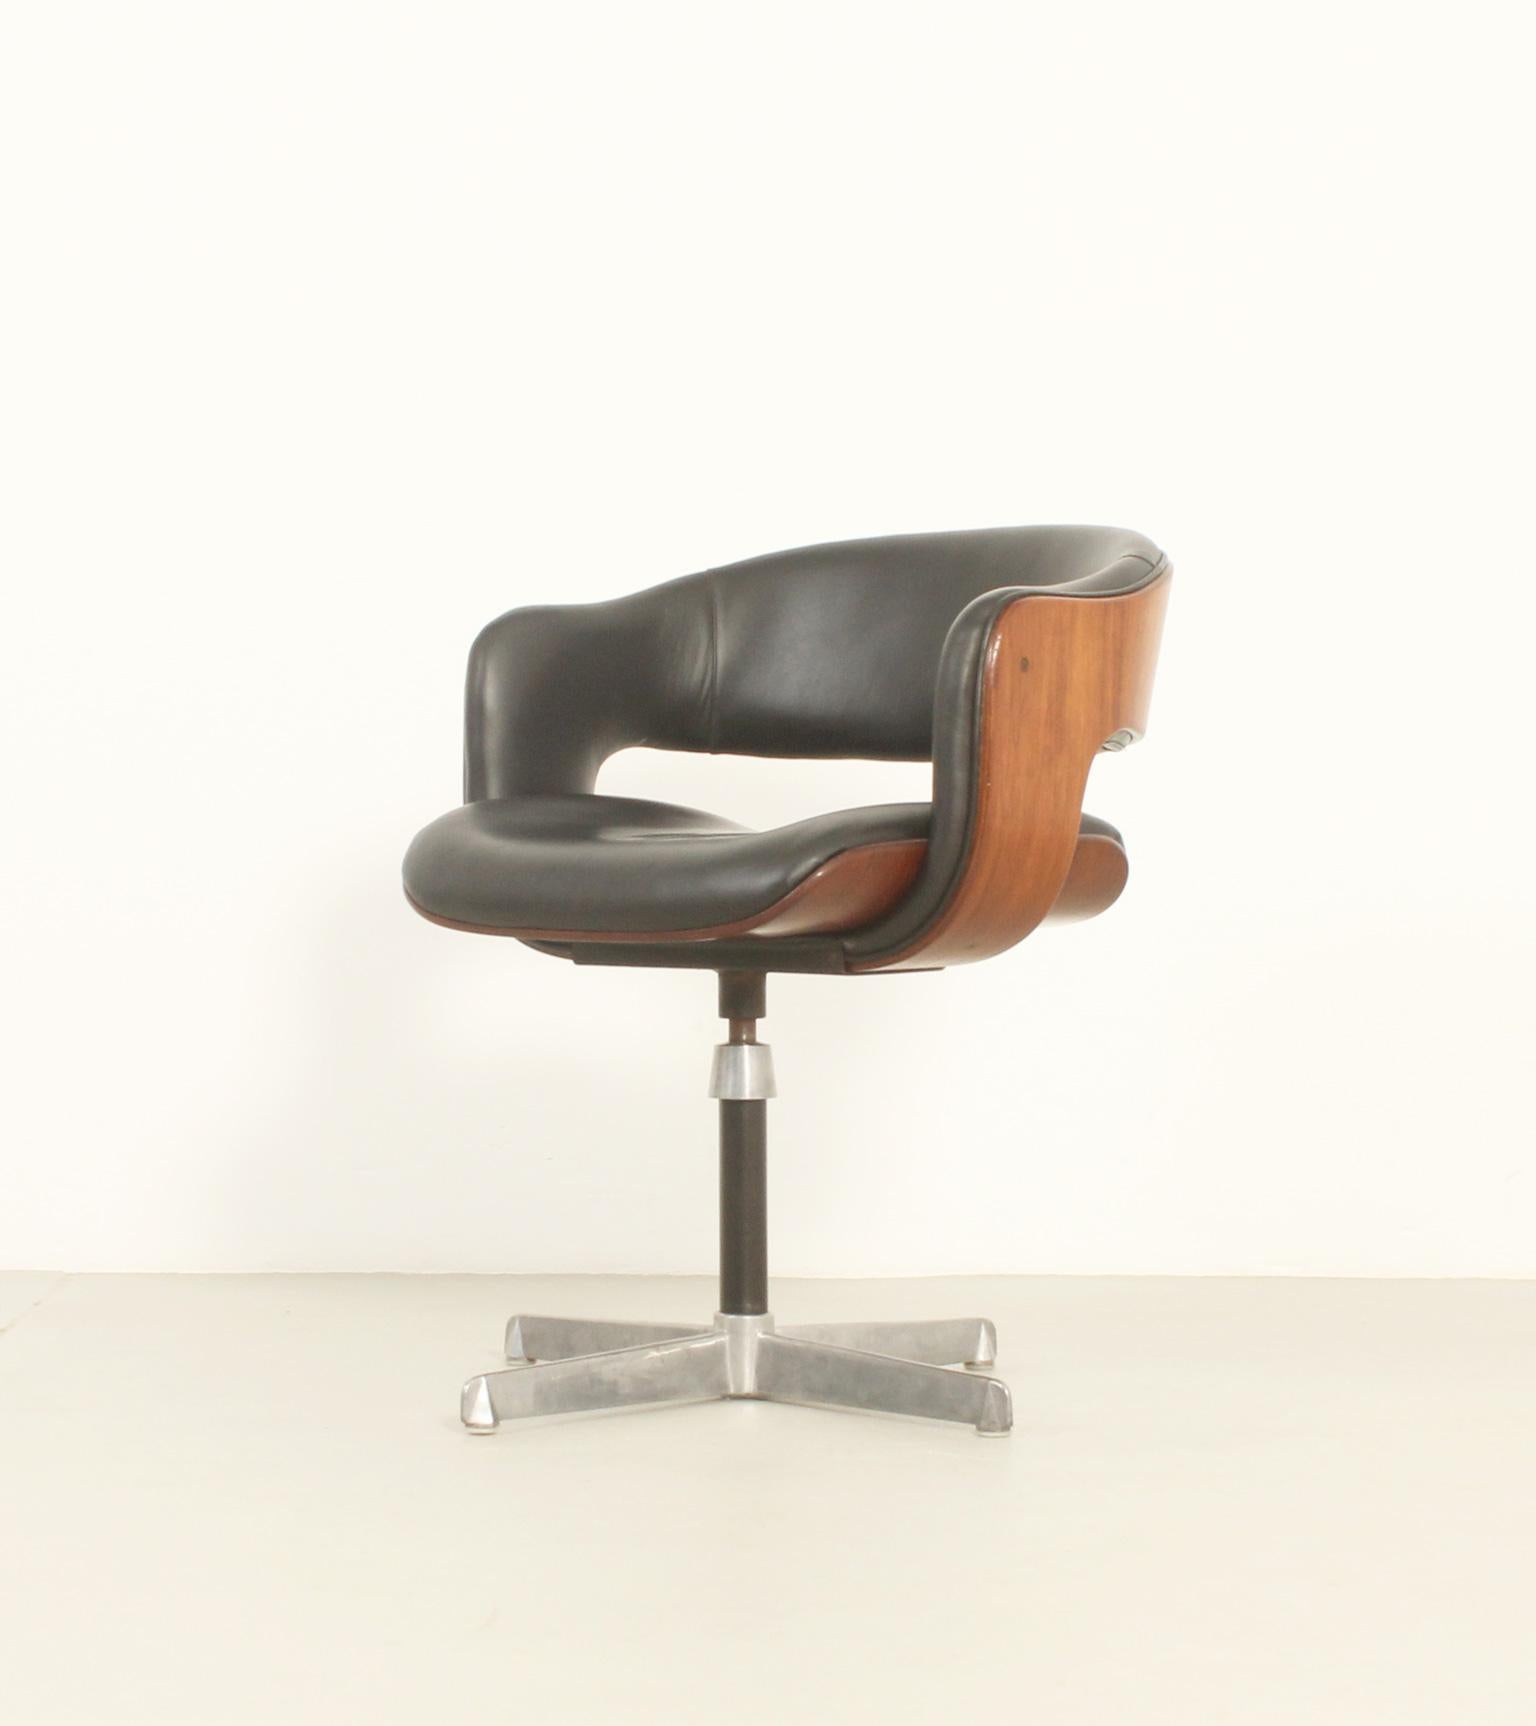 Mid-Century Modern Oxford Chair by British Designer Martin Grierson for Arflex, 1963